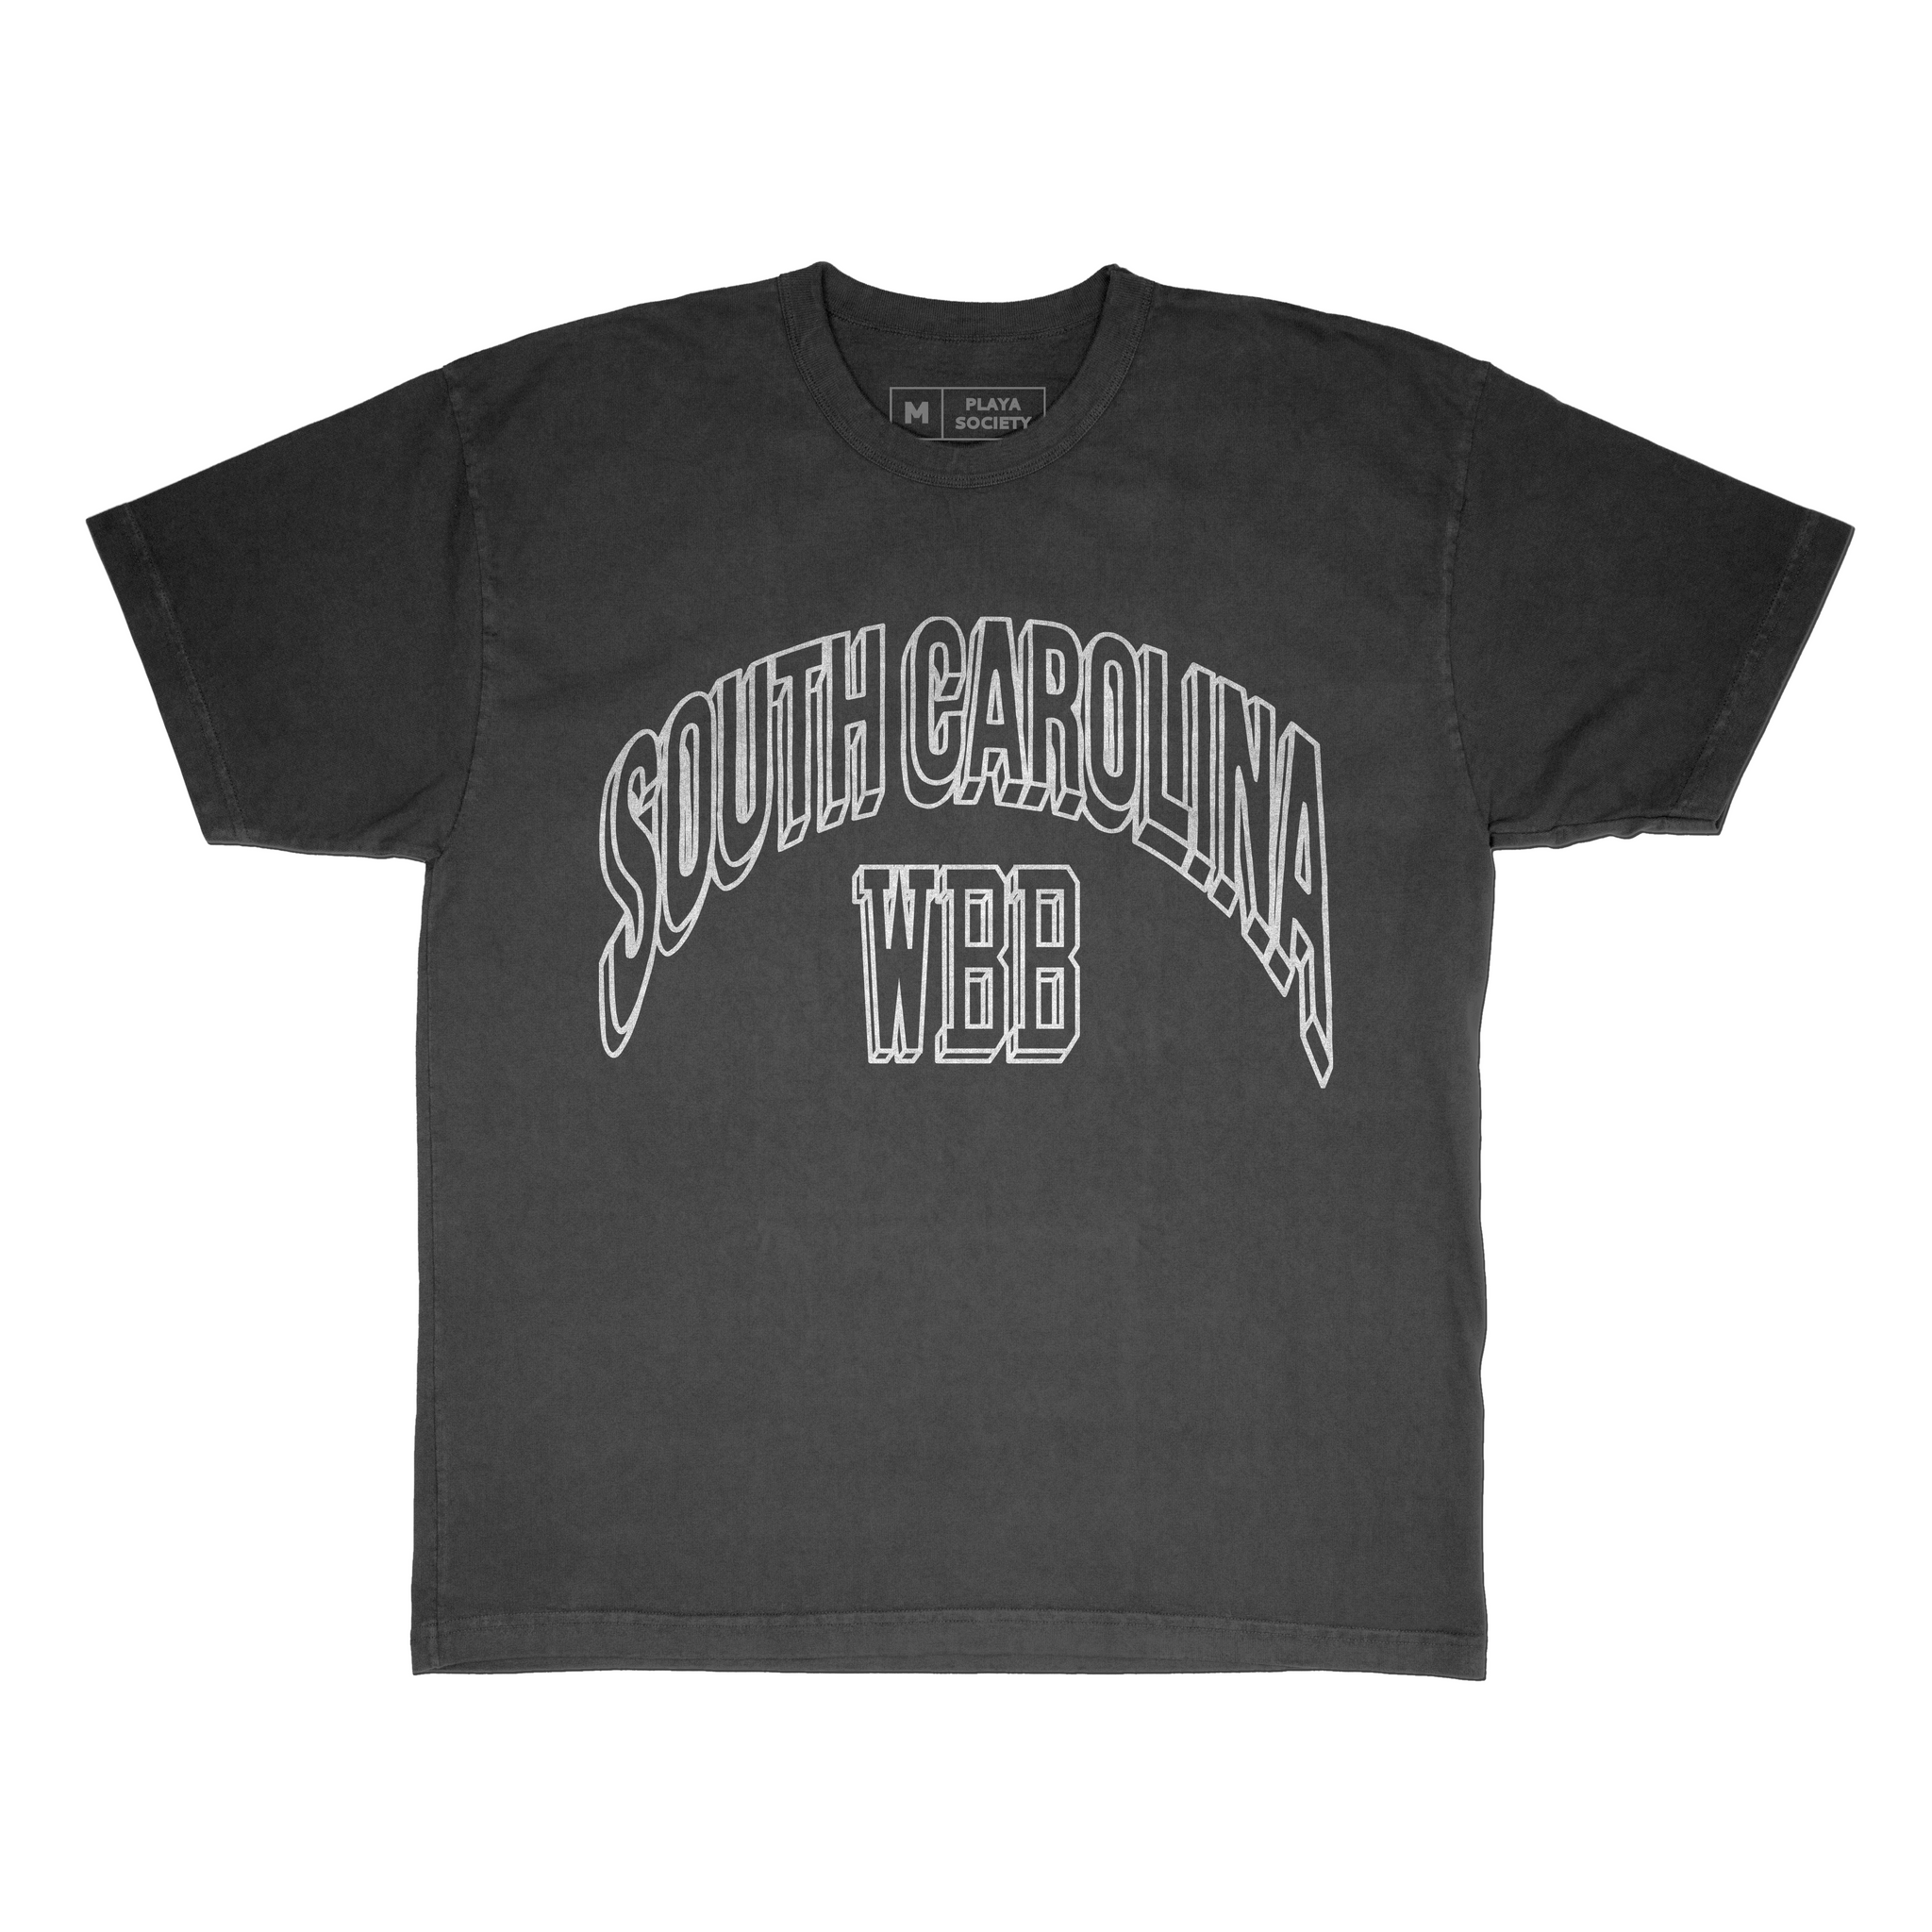 Playa Society South Carolina T-Shirt - Playa Society